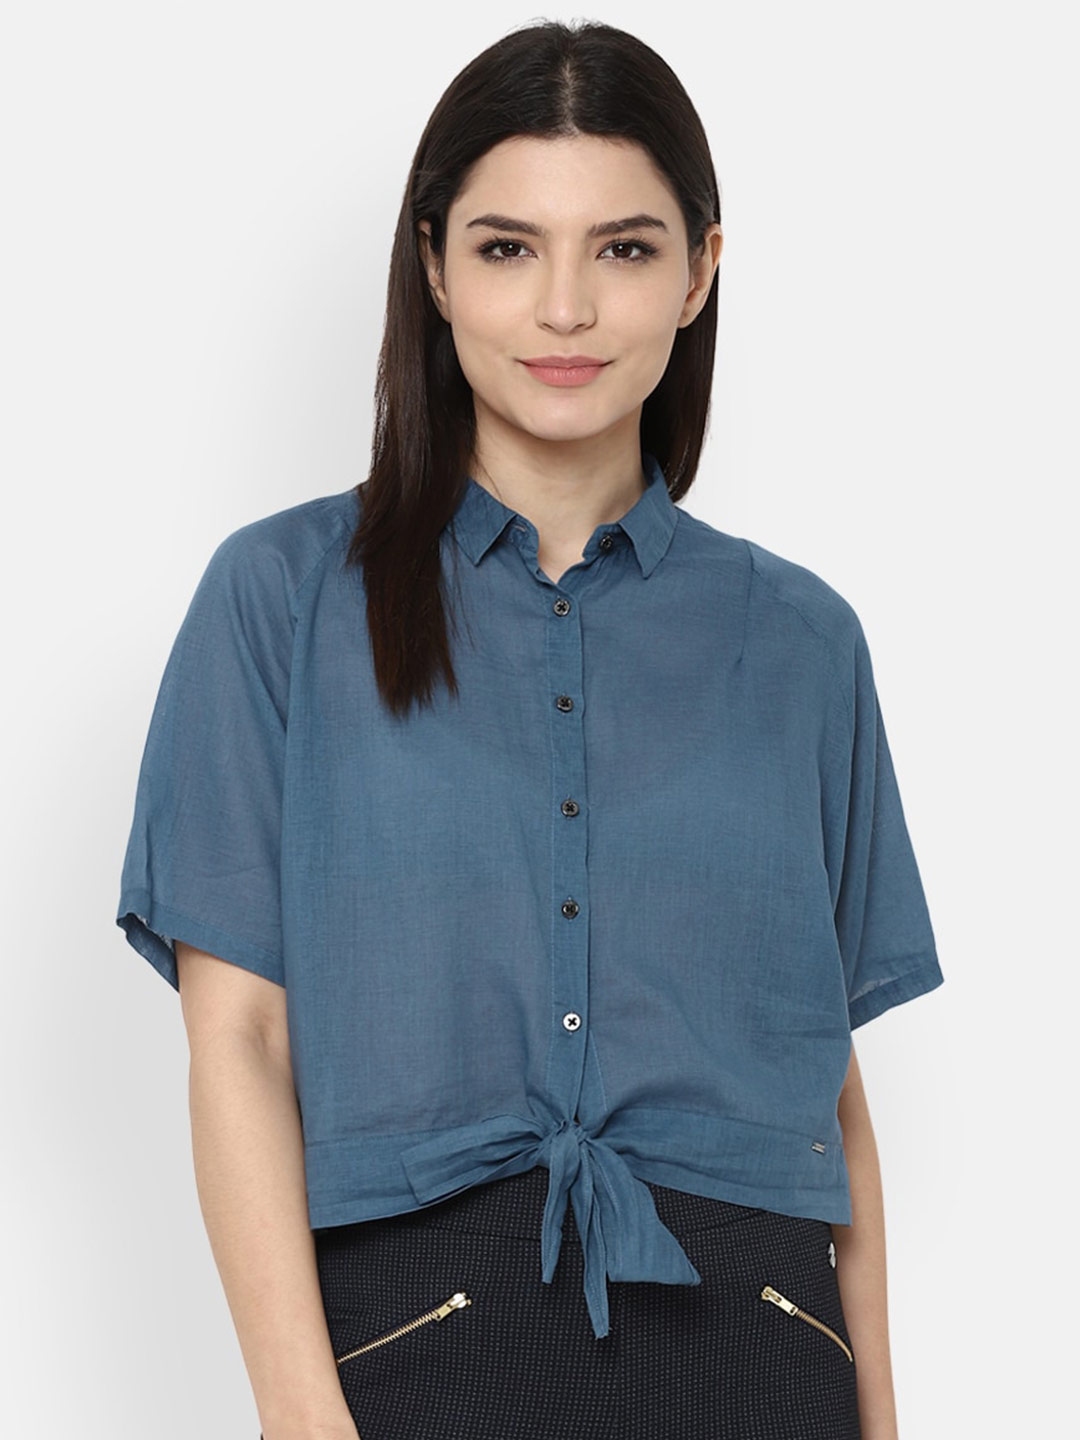 Buy Allen Solly Woman Women Blue Casual Shirt - Shirts for Women ...